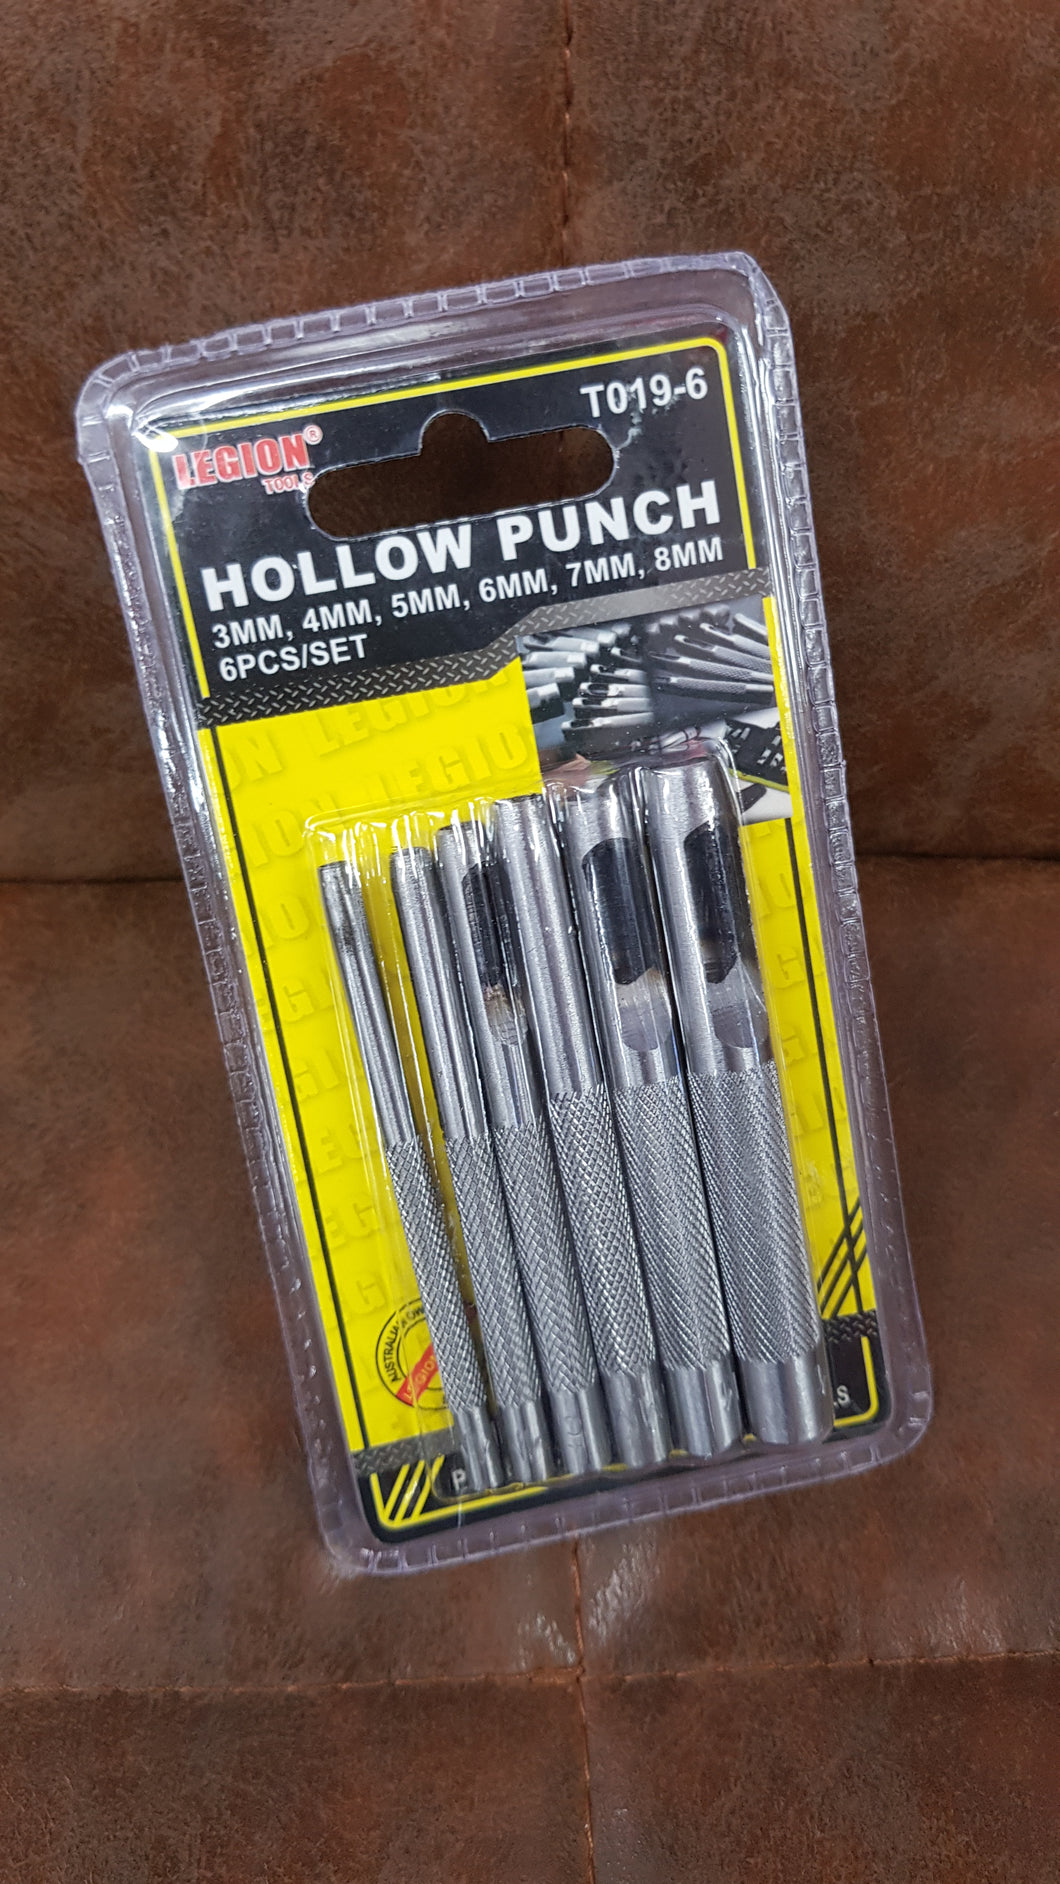 Hollow punch 6pcs set